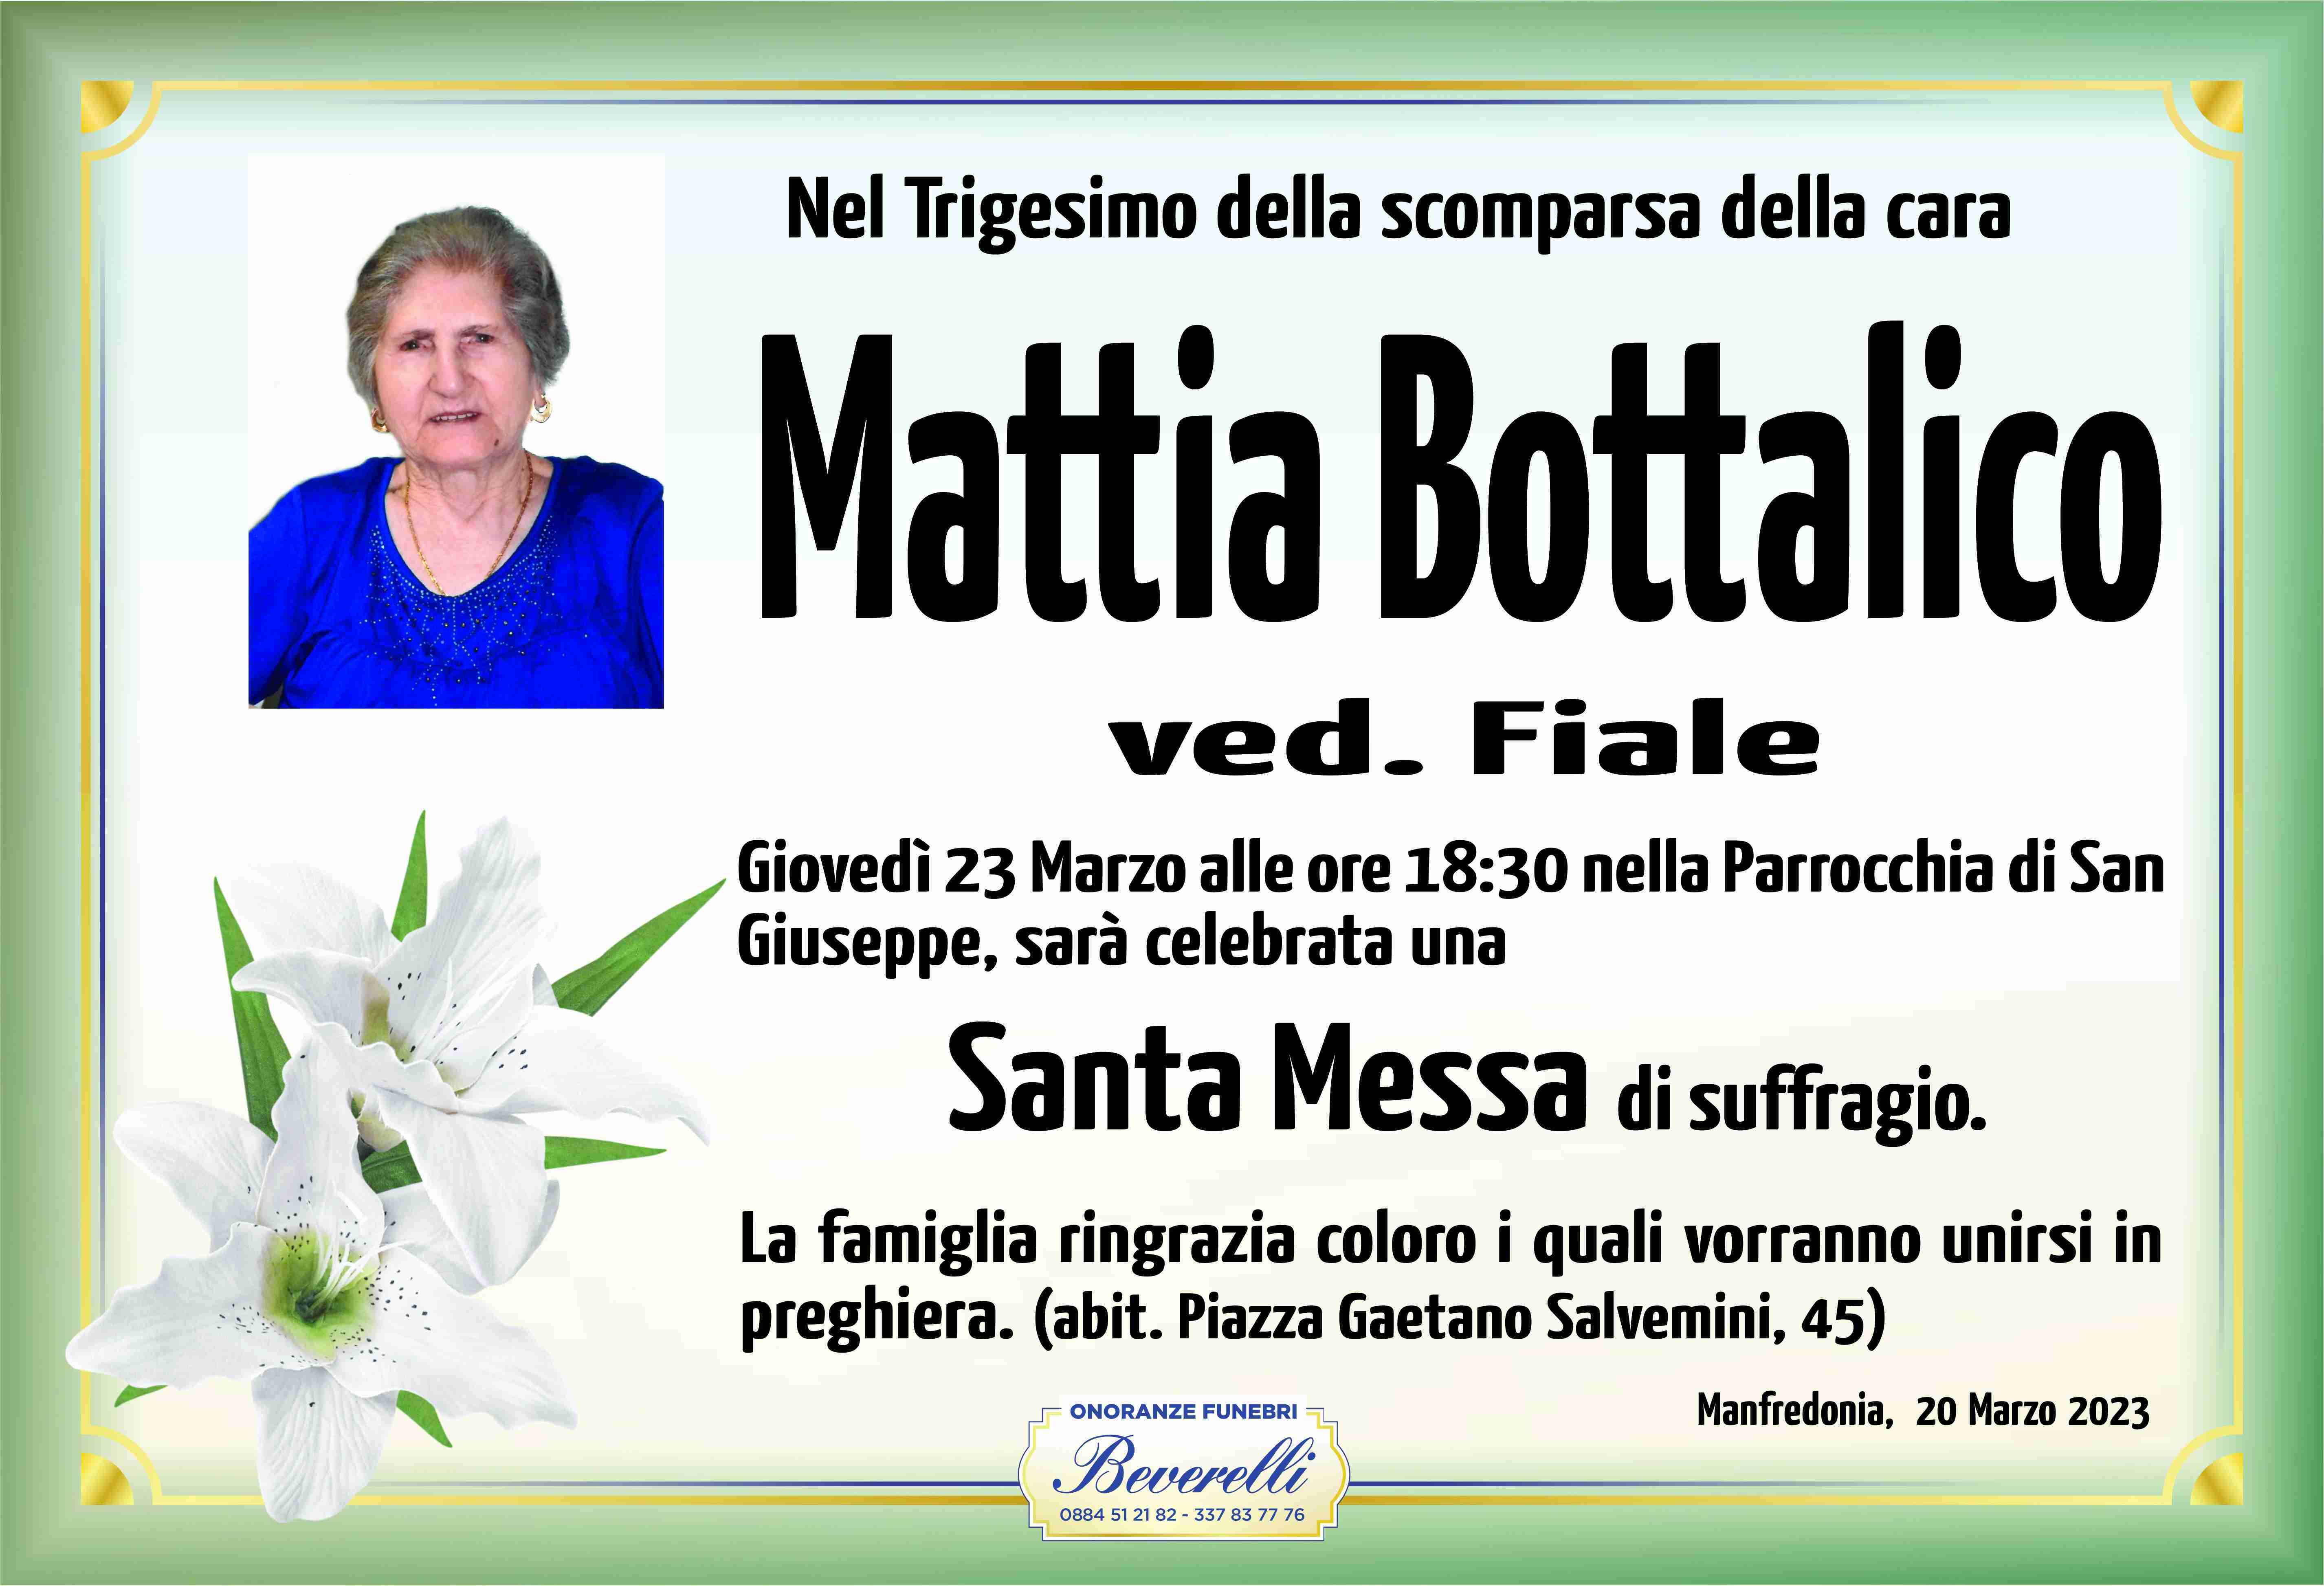 Mattia Bottalico